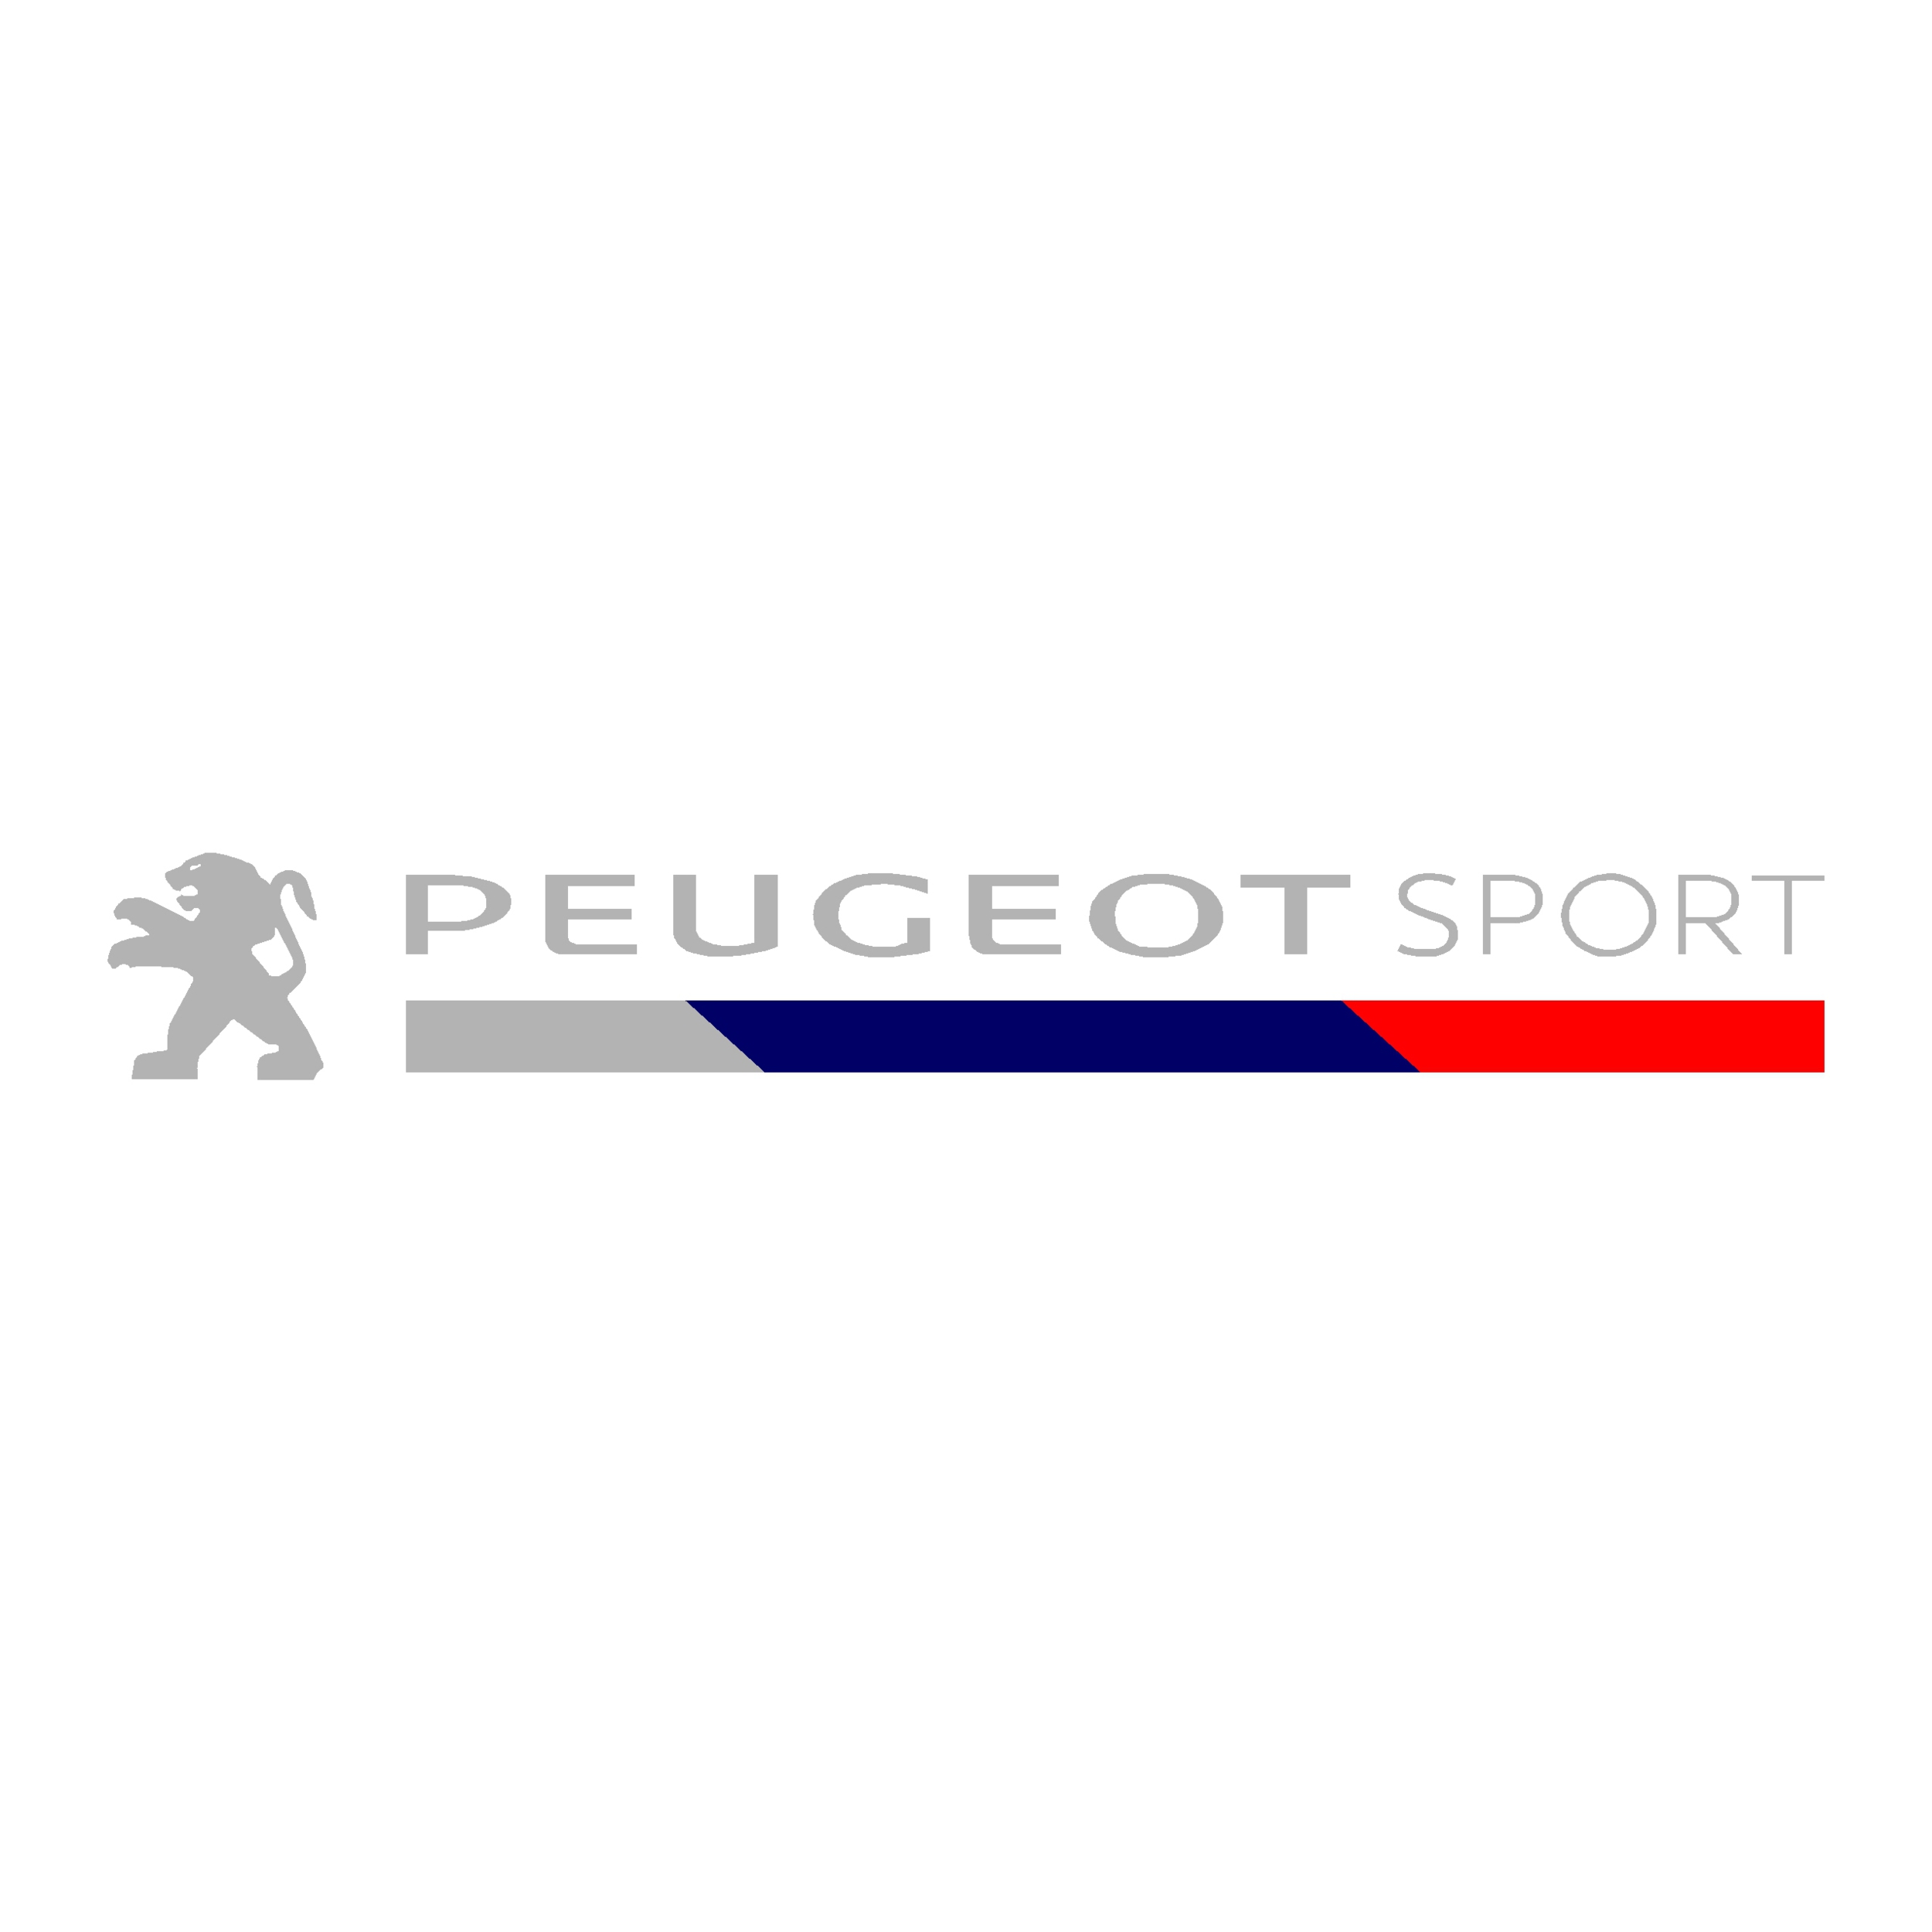 Stickers Peugeot Sport - Autocollant voiture